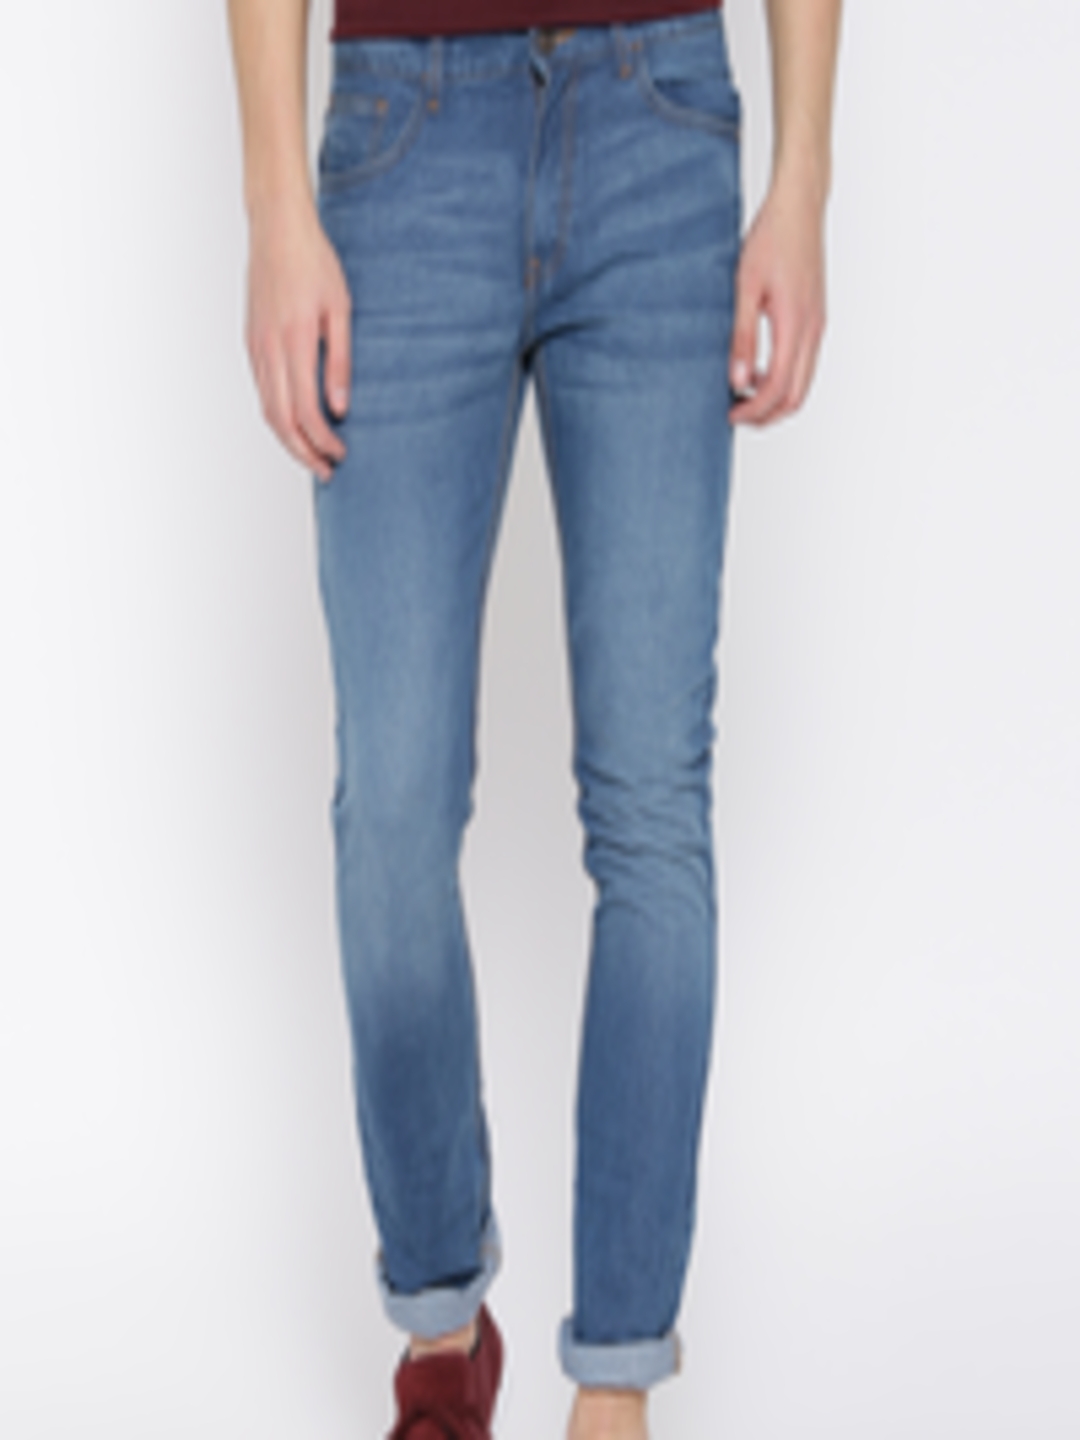 Buy Highlander Blue Slim Fit Jeans - Jeans for Men 1265379 | Myntra